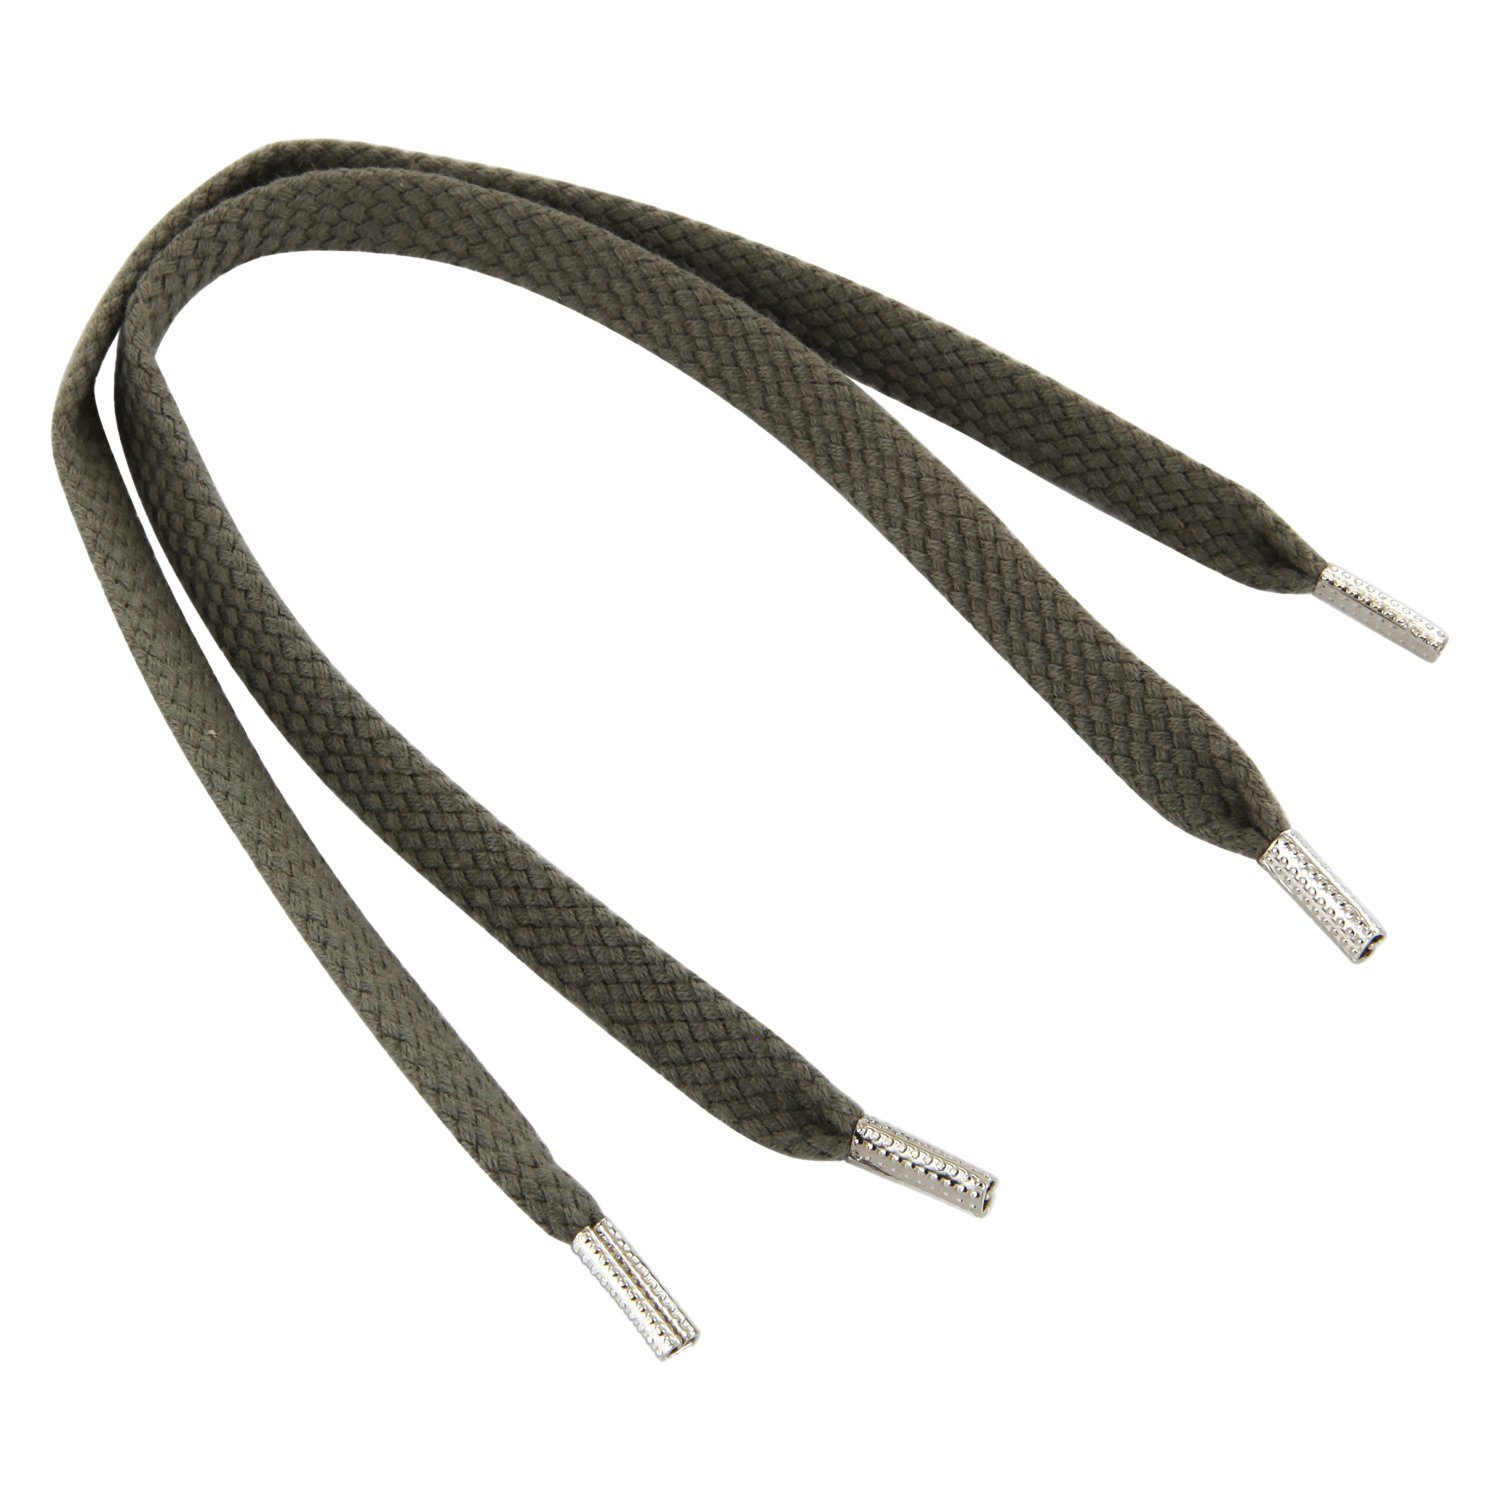 Rema Schnürsenkel Rema Schnürsenkel Mittelgrau - flach - ca. 6-7 mm breit für Sie nach Wunschlänge geschnitten und mit Metallenden versehen